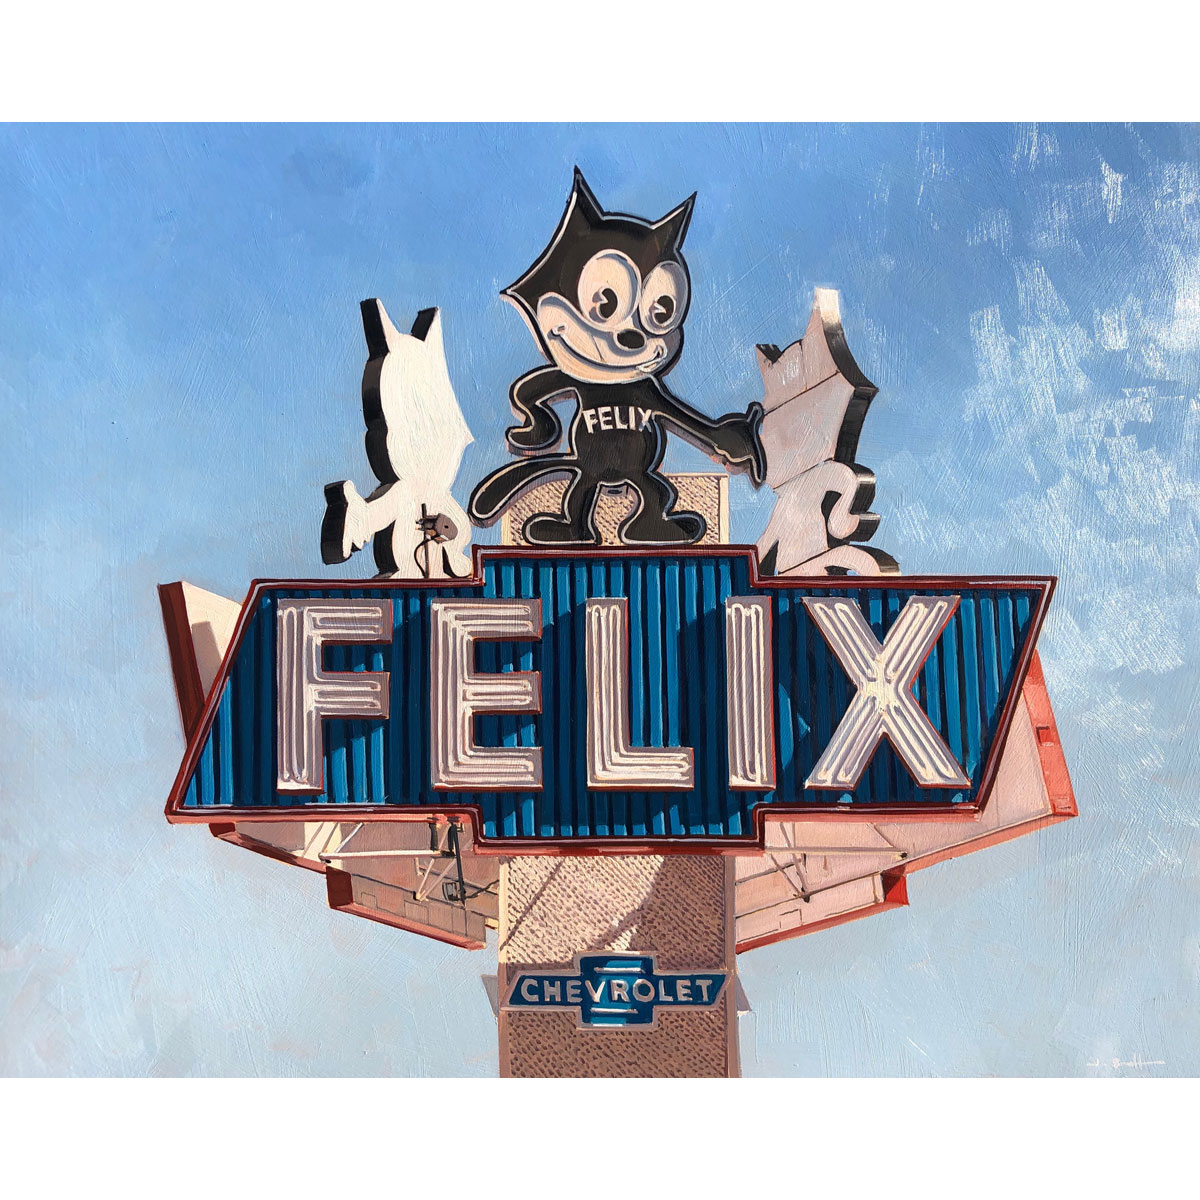 Felix by James Randle